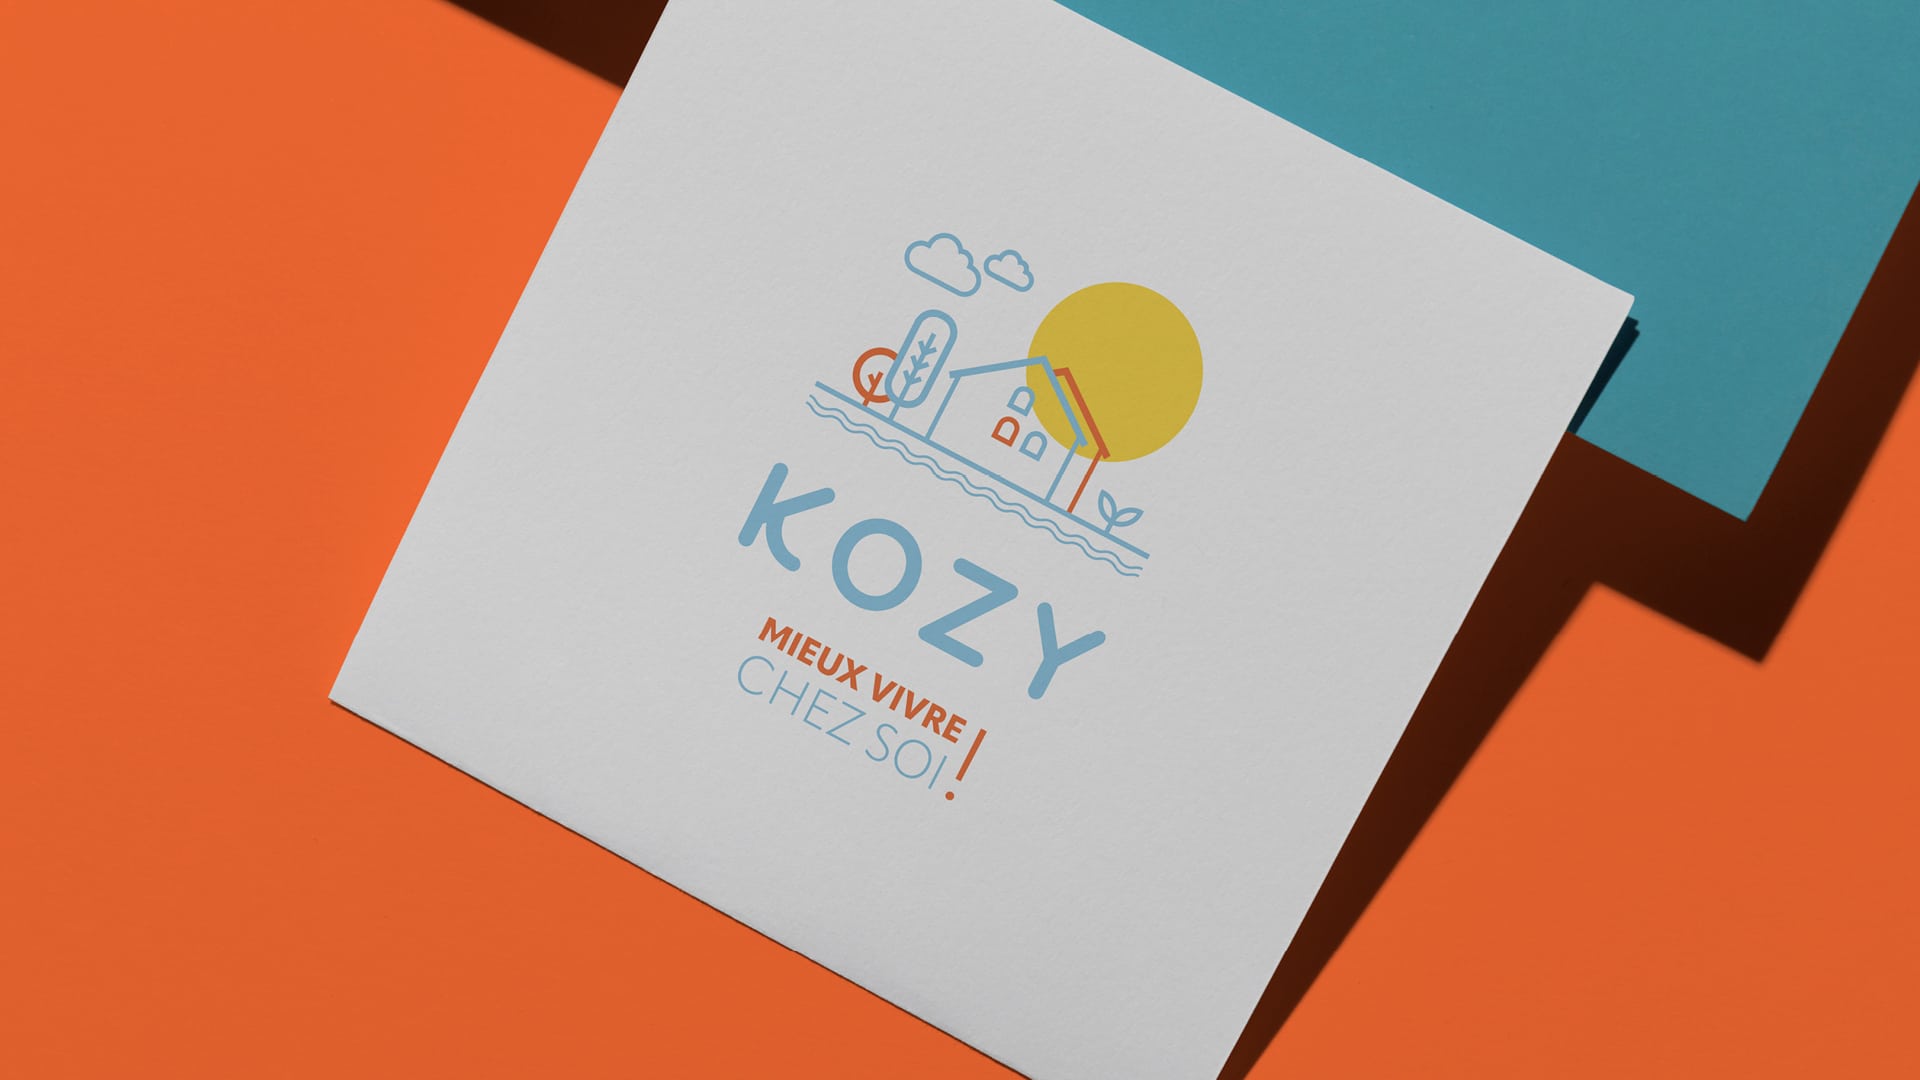 Découvrez l'identité visuelle de Kozy par notre agence de graphisme à Toulouse NRV. : analyse de marché approfondie, création d'un logo distinctif, développement d'une charte graphique moderne, et conception de supports de communication variés pour renforcer la présence de Kozy dans le secteur des services à domicile.